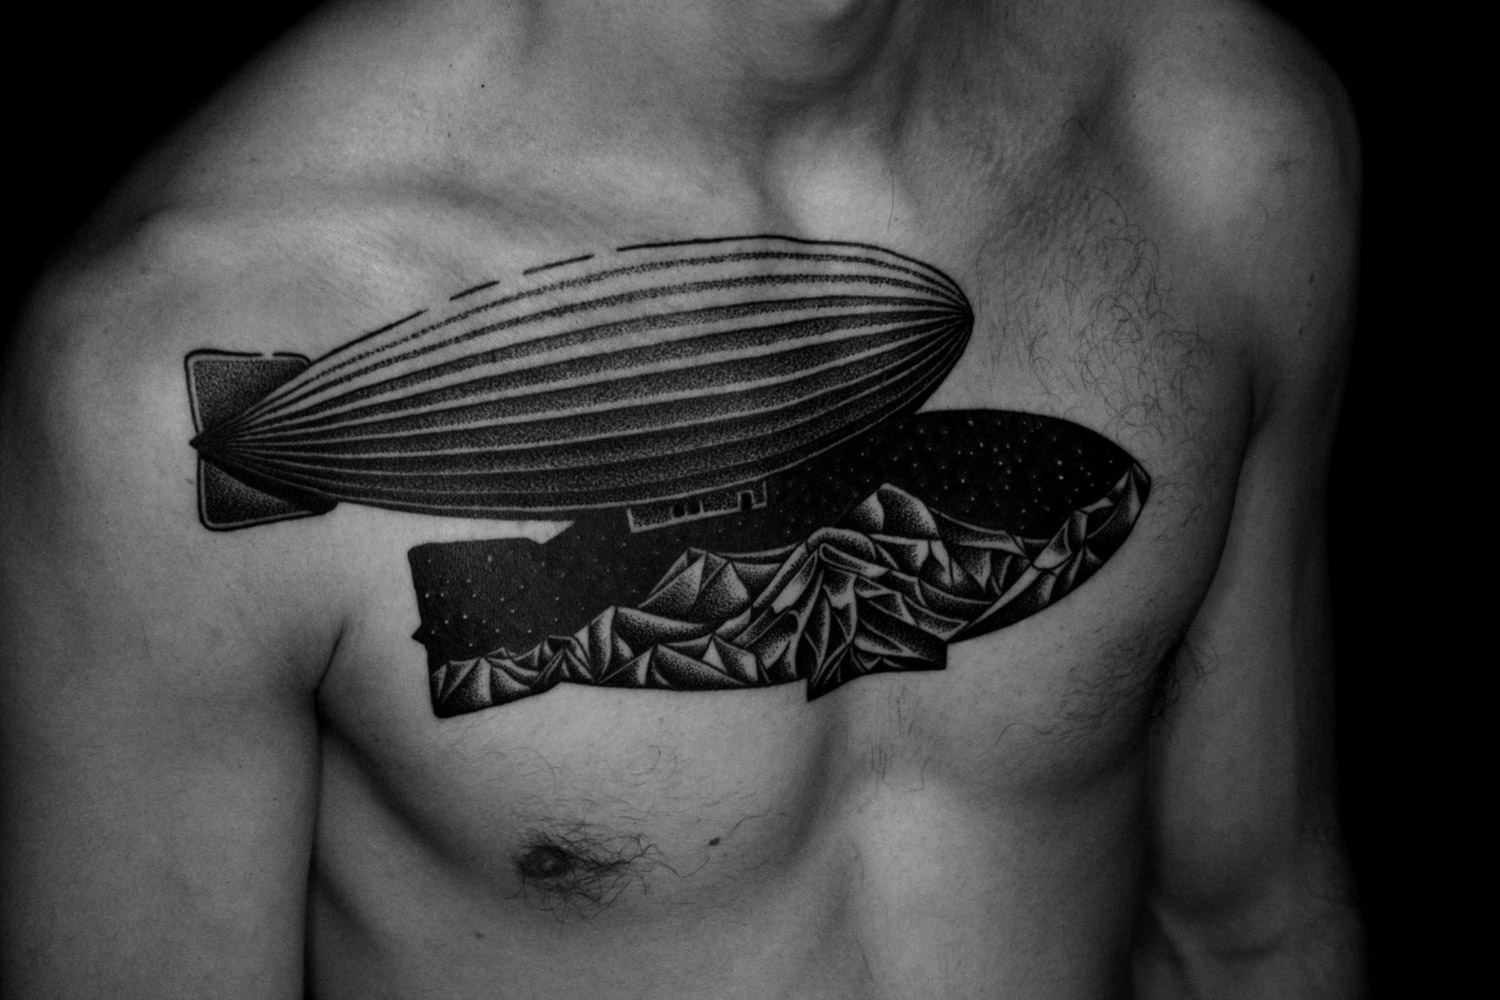 double blimp on chest by ilya brezinski